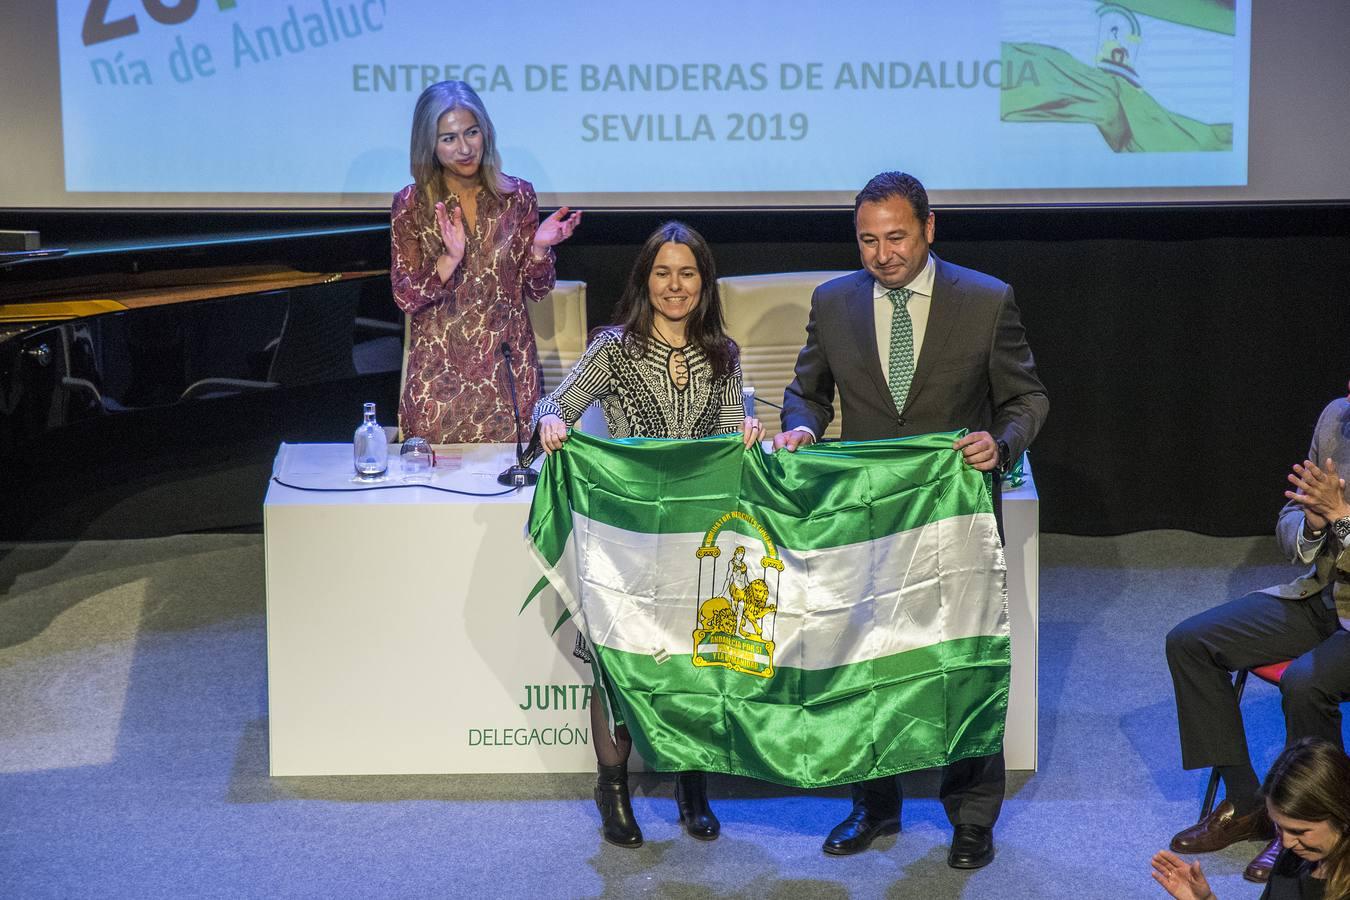 Entrega de Banderas de Andalucía de la provincia de Sevilla